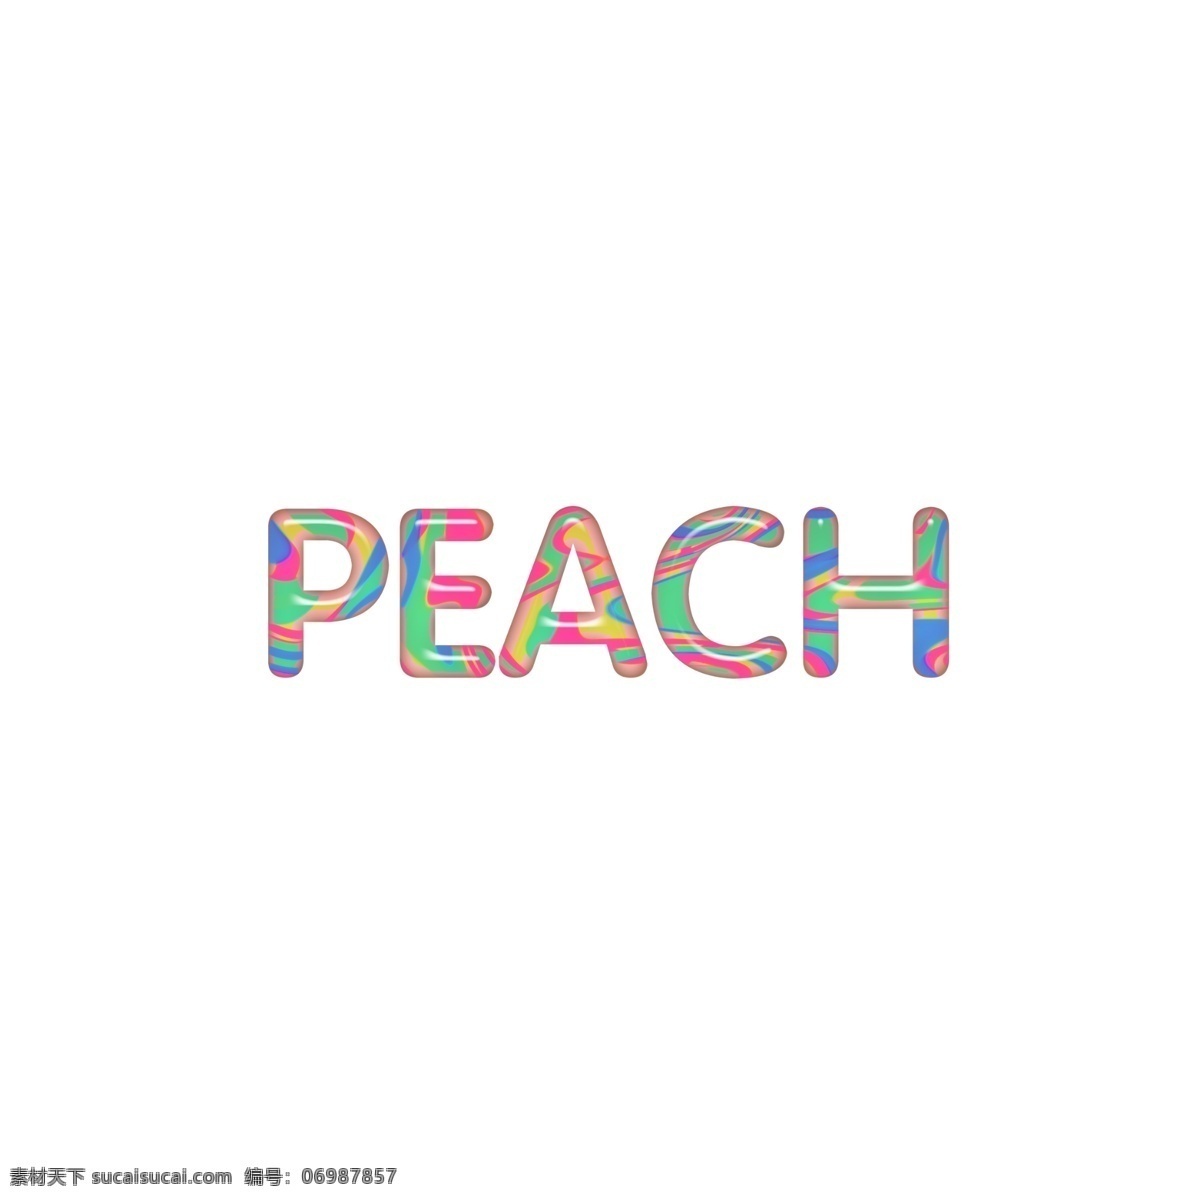 英文 字母 糖果 色系 立体 peach 桃子 卡通英文 英语 字体设计字母 装饰排版 通用英文 艺术字 单词 糖果色 流行趋势 儿童 字体